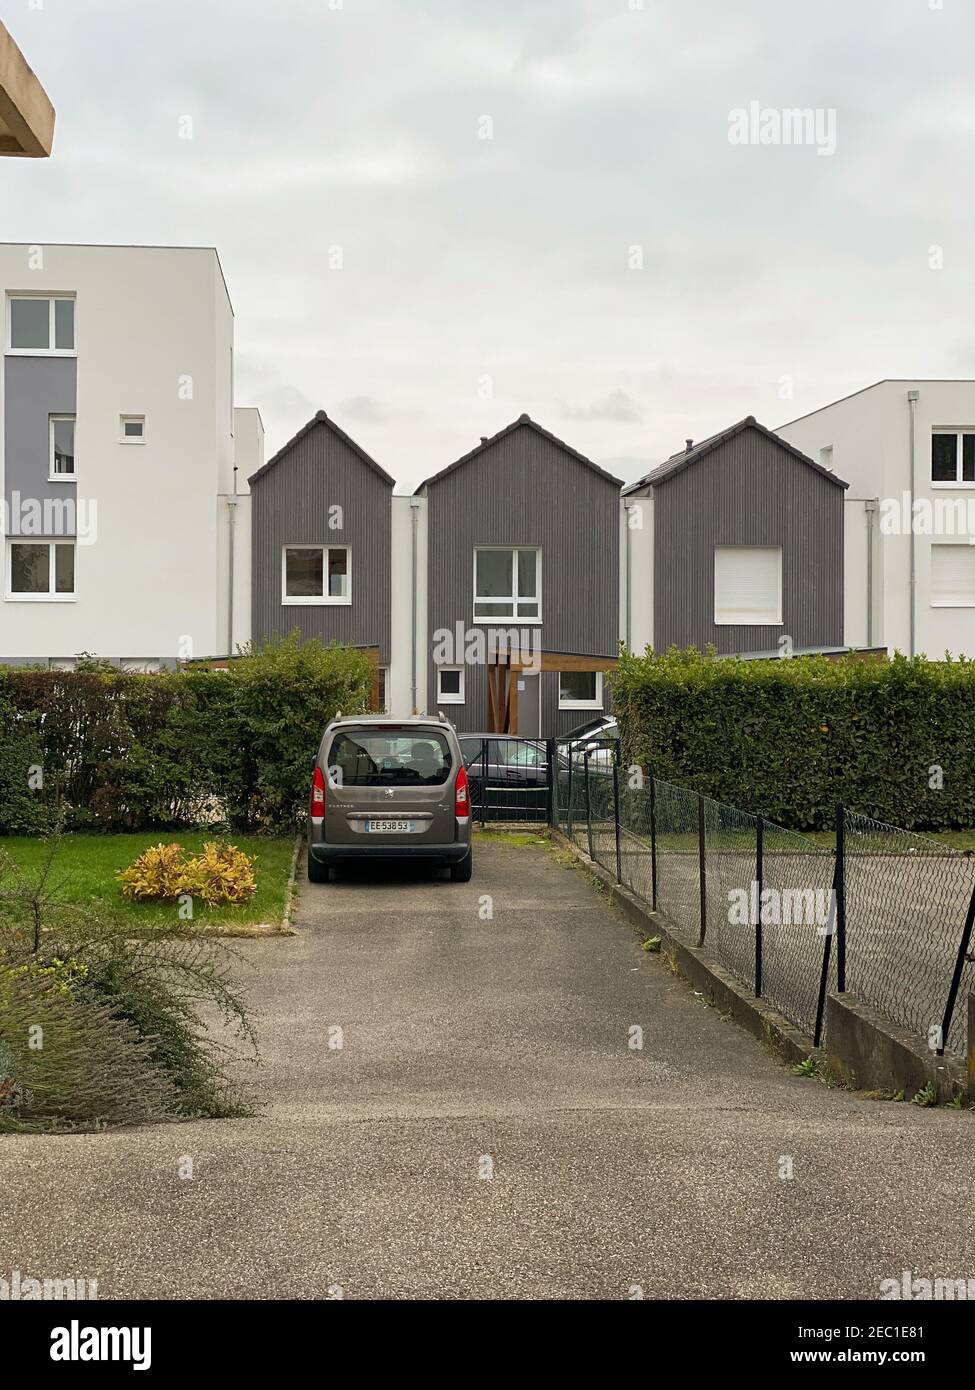 Estrasburgo, Francia - 17 de octubre de 2020: Casas de apartamentos nórdicos con Peugeot coche estacionado en frente Foto de stock